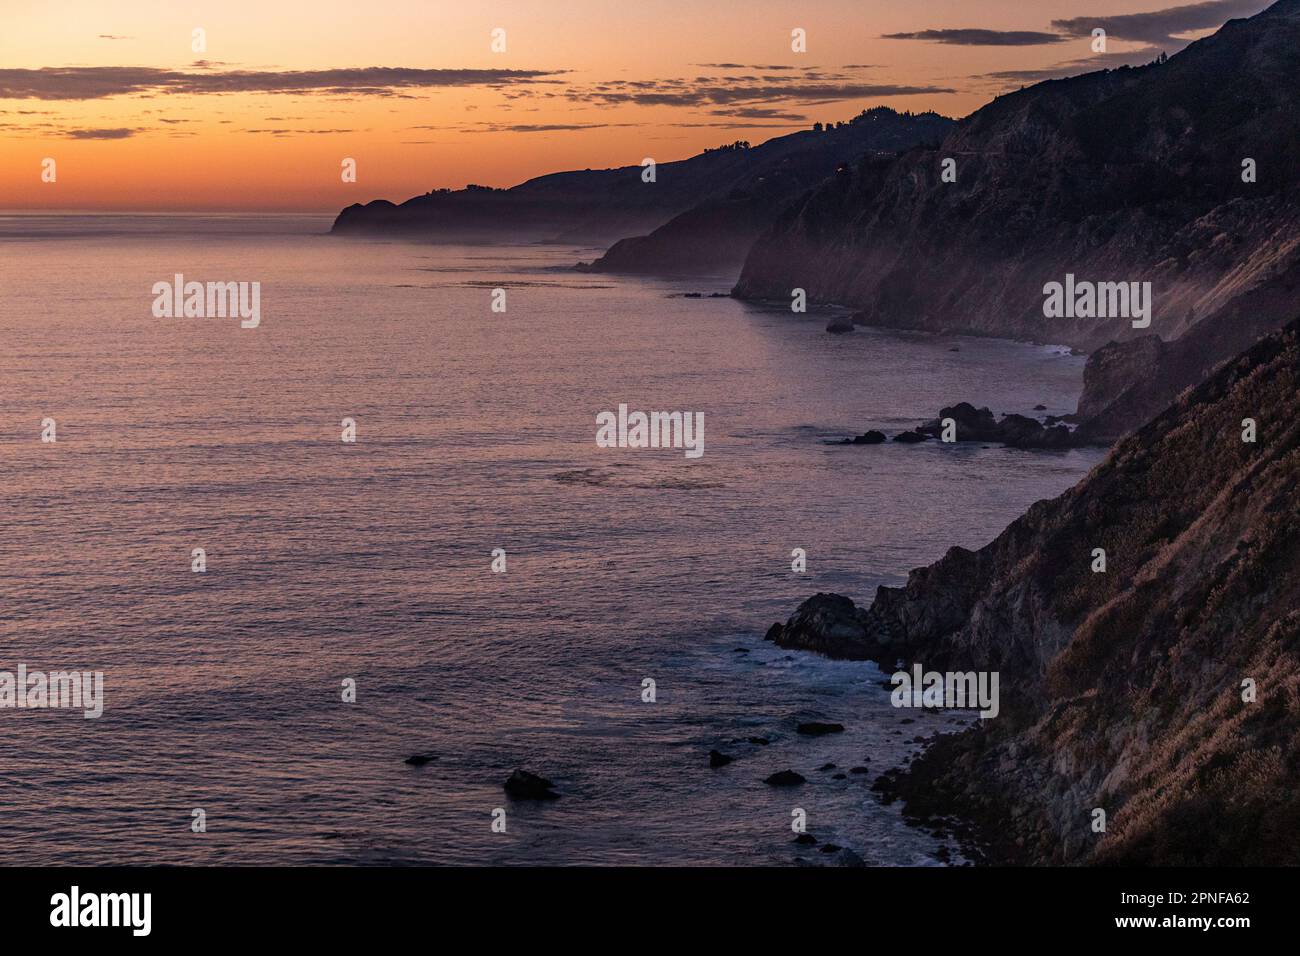 États-Unis, Californie, Big sur, côte de Big sur au coucher du soleil Banque D'Images